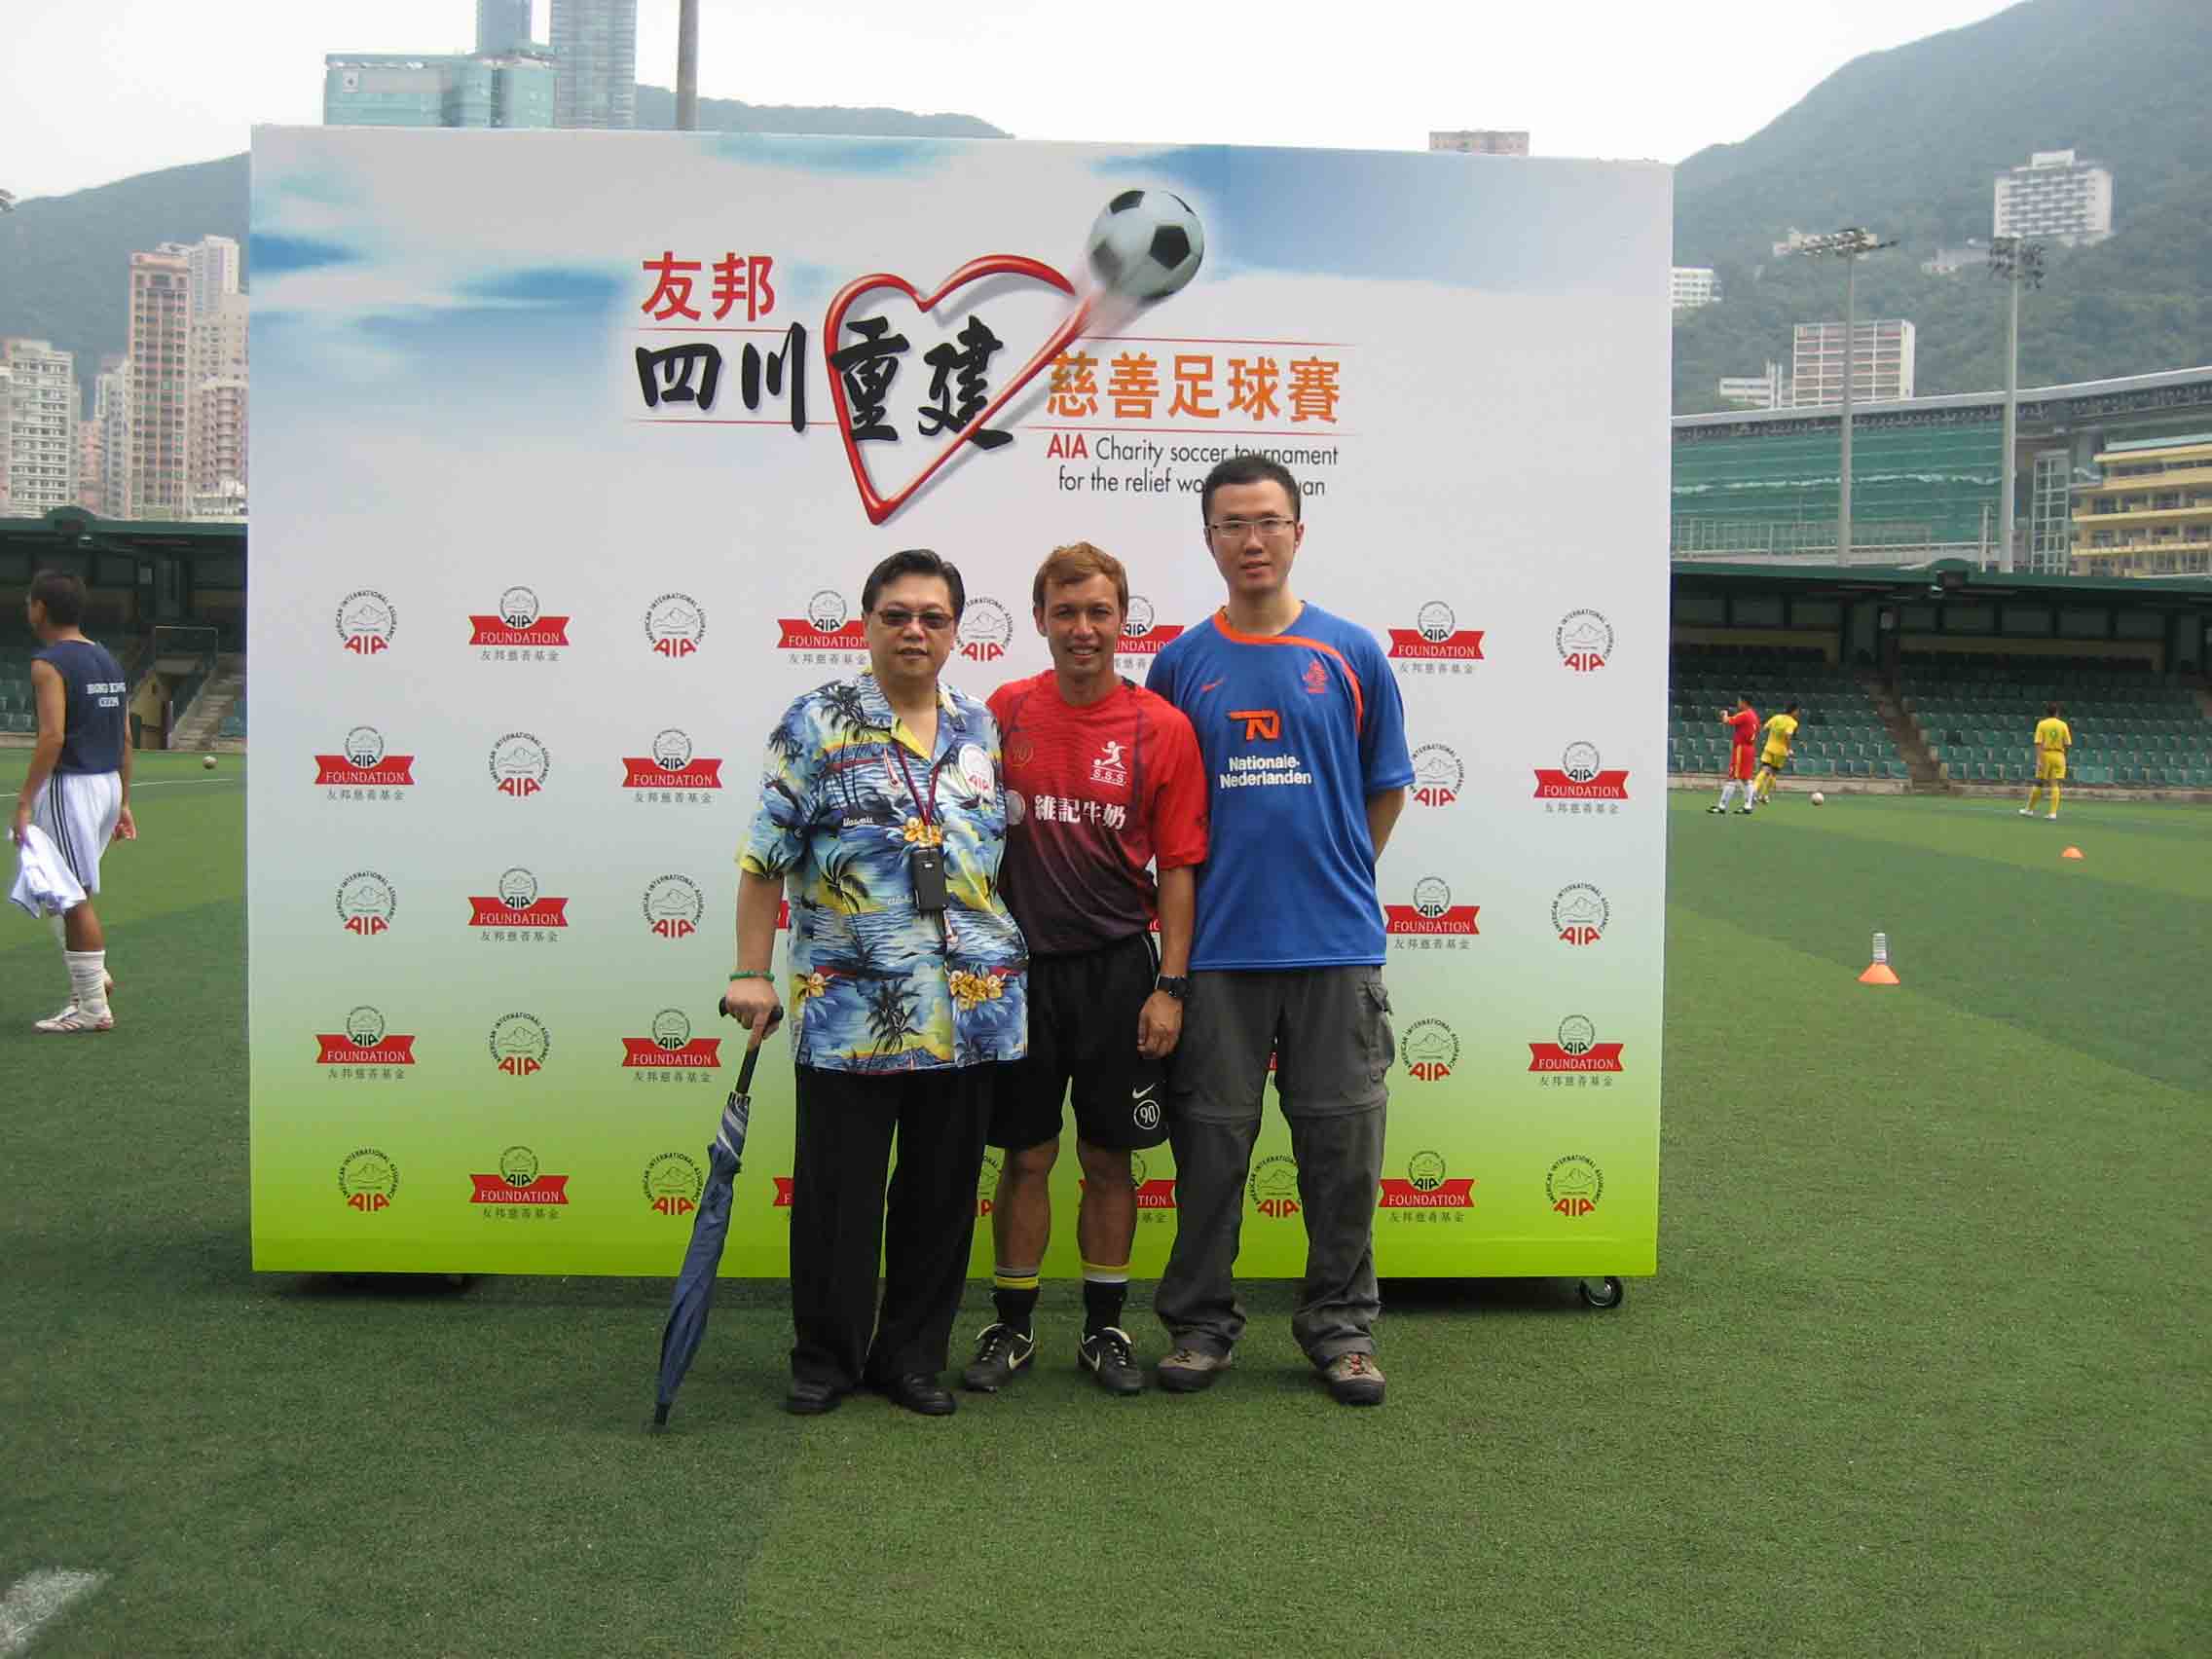 我們的物理治療客戶, 明星足球隊, 香港曼聯官方球迷會, DHL香港, 香港鐵路有限公司 MTR